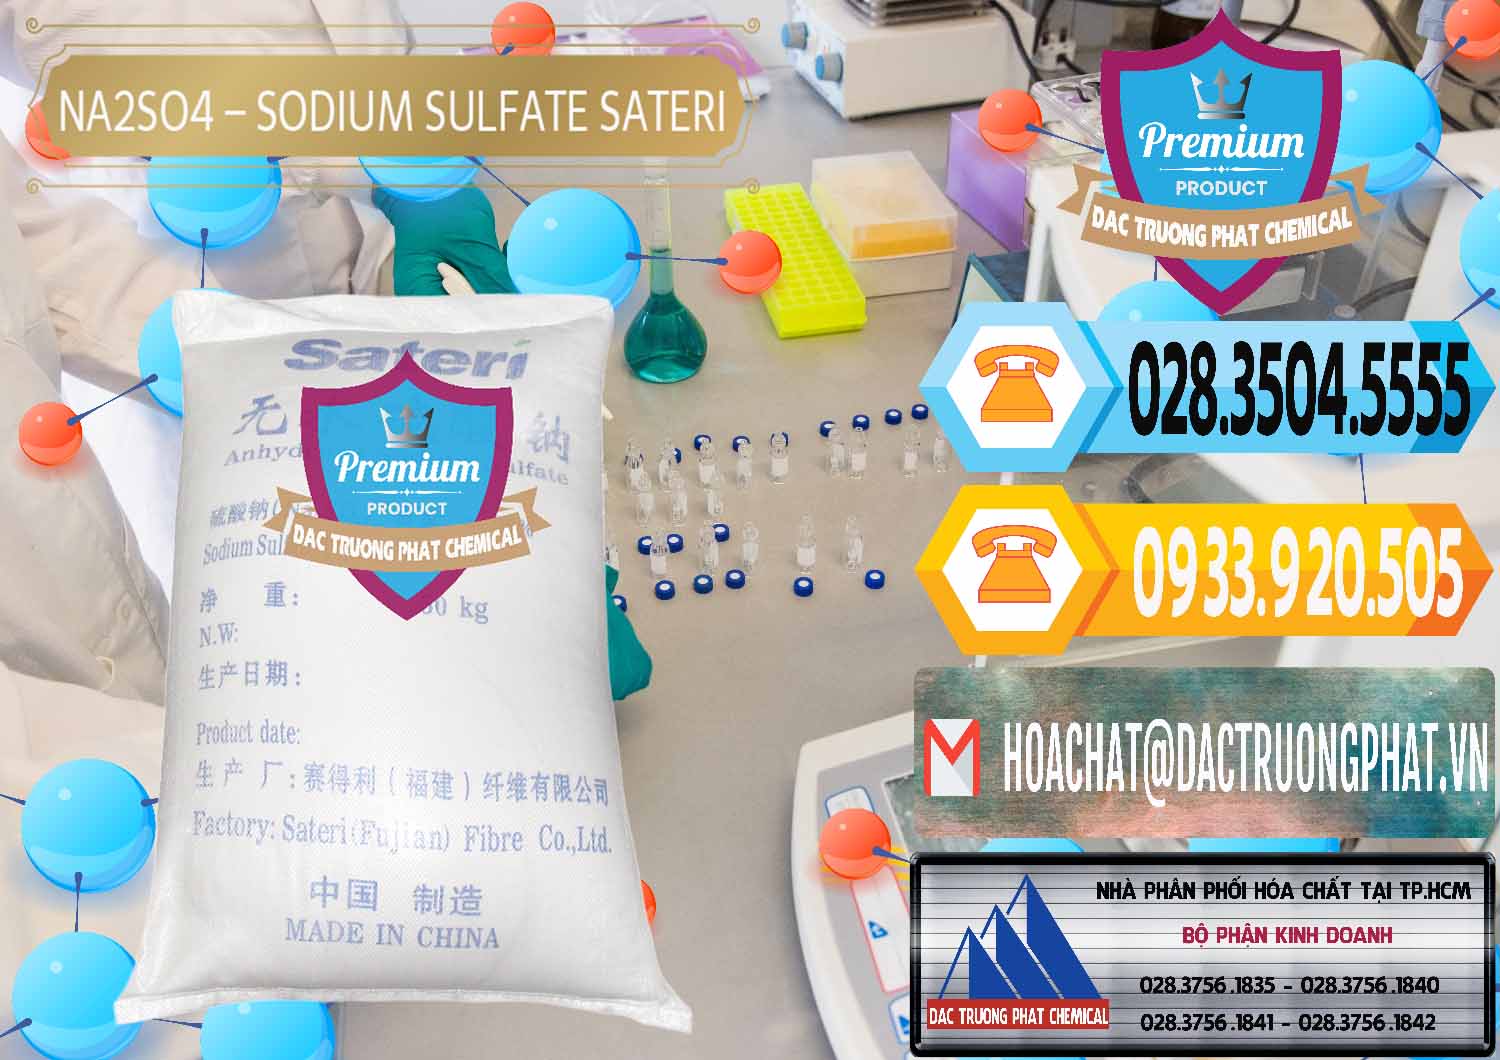 Công ty kinh doanh ( bán ) Sodium Sulphate - Muối Sunfat Na2SO4 Sateri Trung Quốc China - 0100 - Cty chuyên phân phối - cung ứng hóa chất tại TP.HCM - hoachattayrua.net